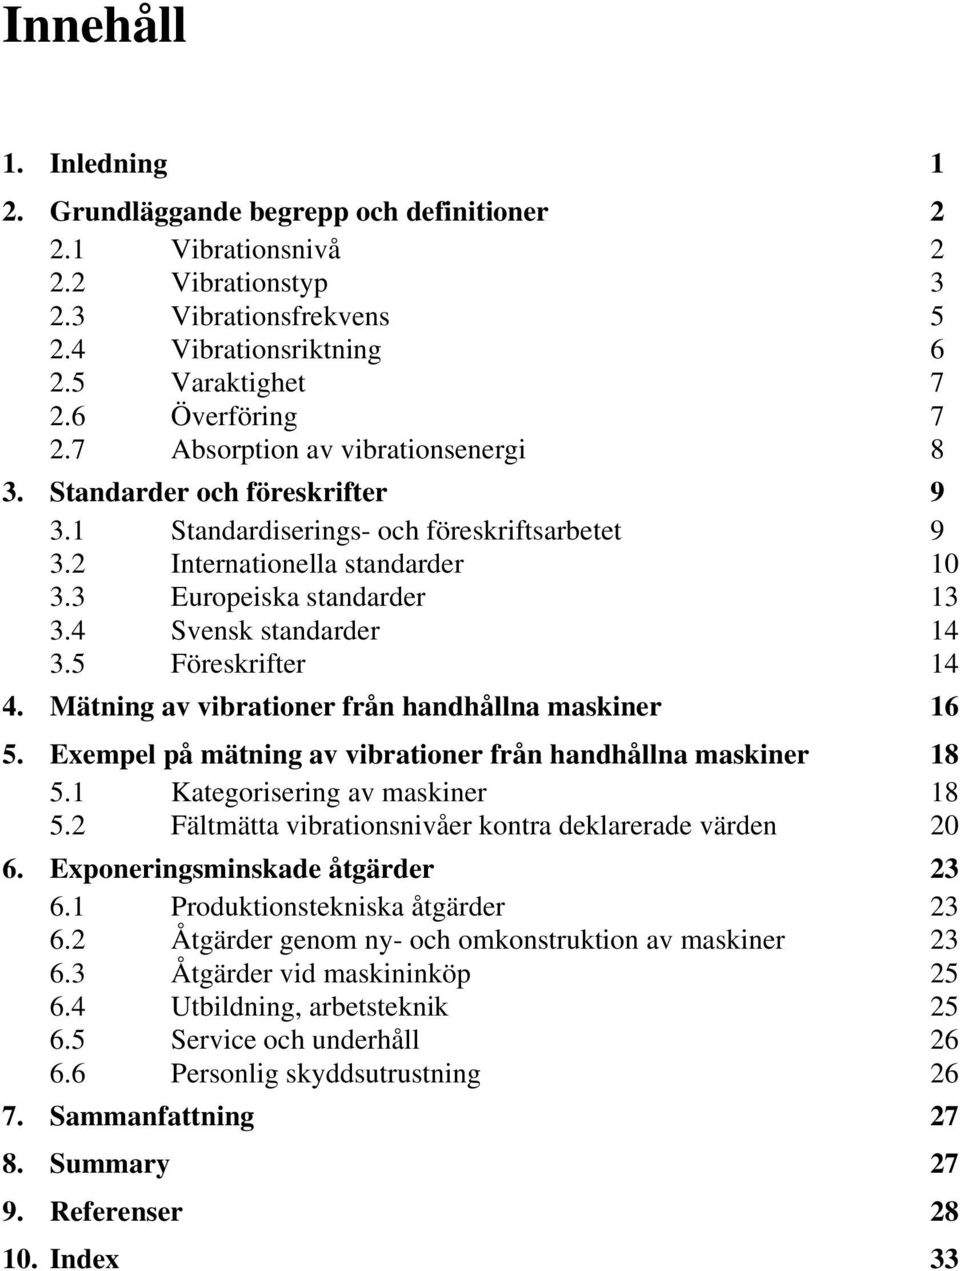 4 Svensk standarder 14 3.5 Föreskrifter 14 4. Mätning av vibrationer från handhållna maskiner 16 5. Exempel på mätning av vibrationer från handhållna maskiner 18 5.1 Kategorisering av maskiner 18 5.